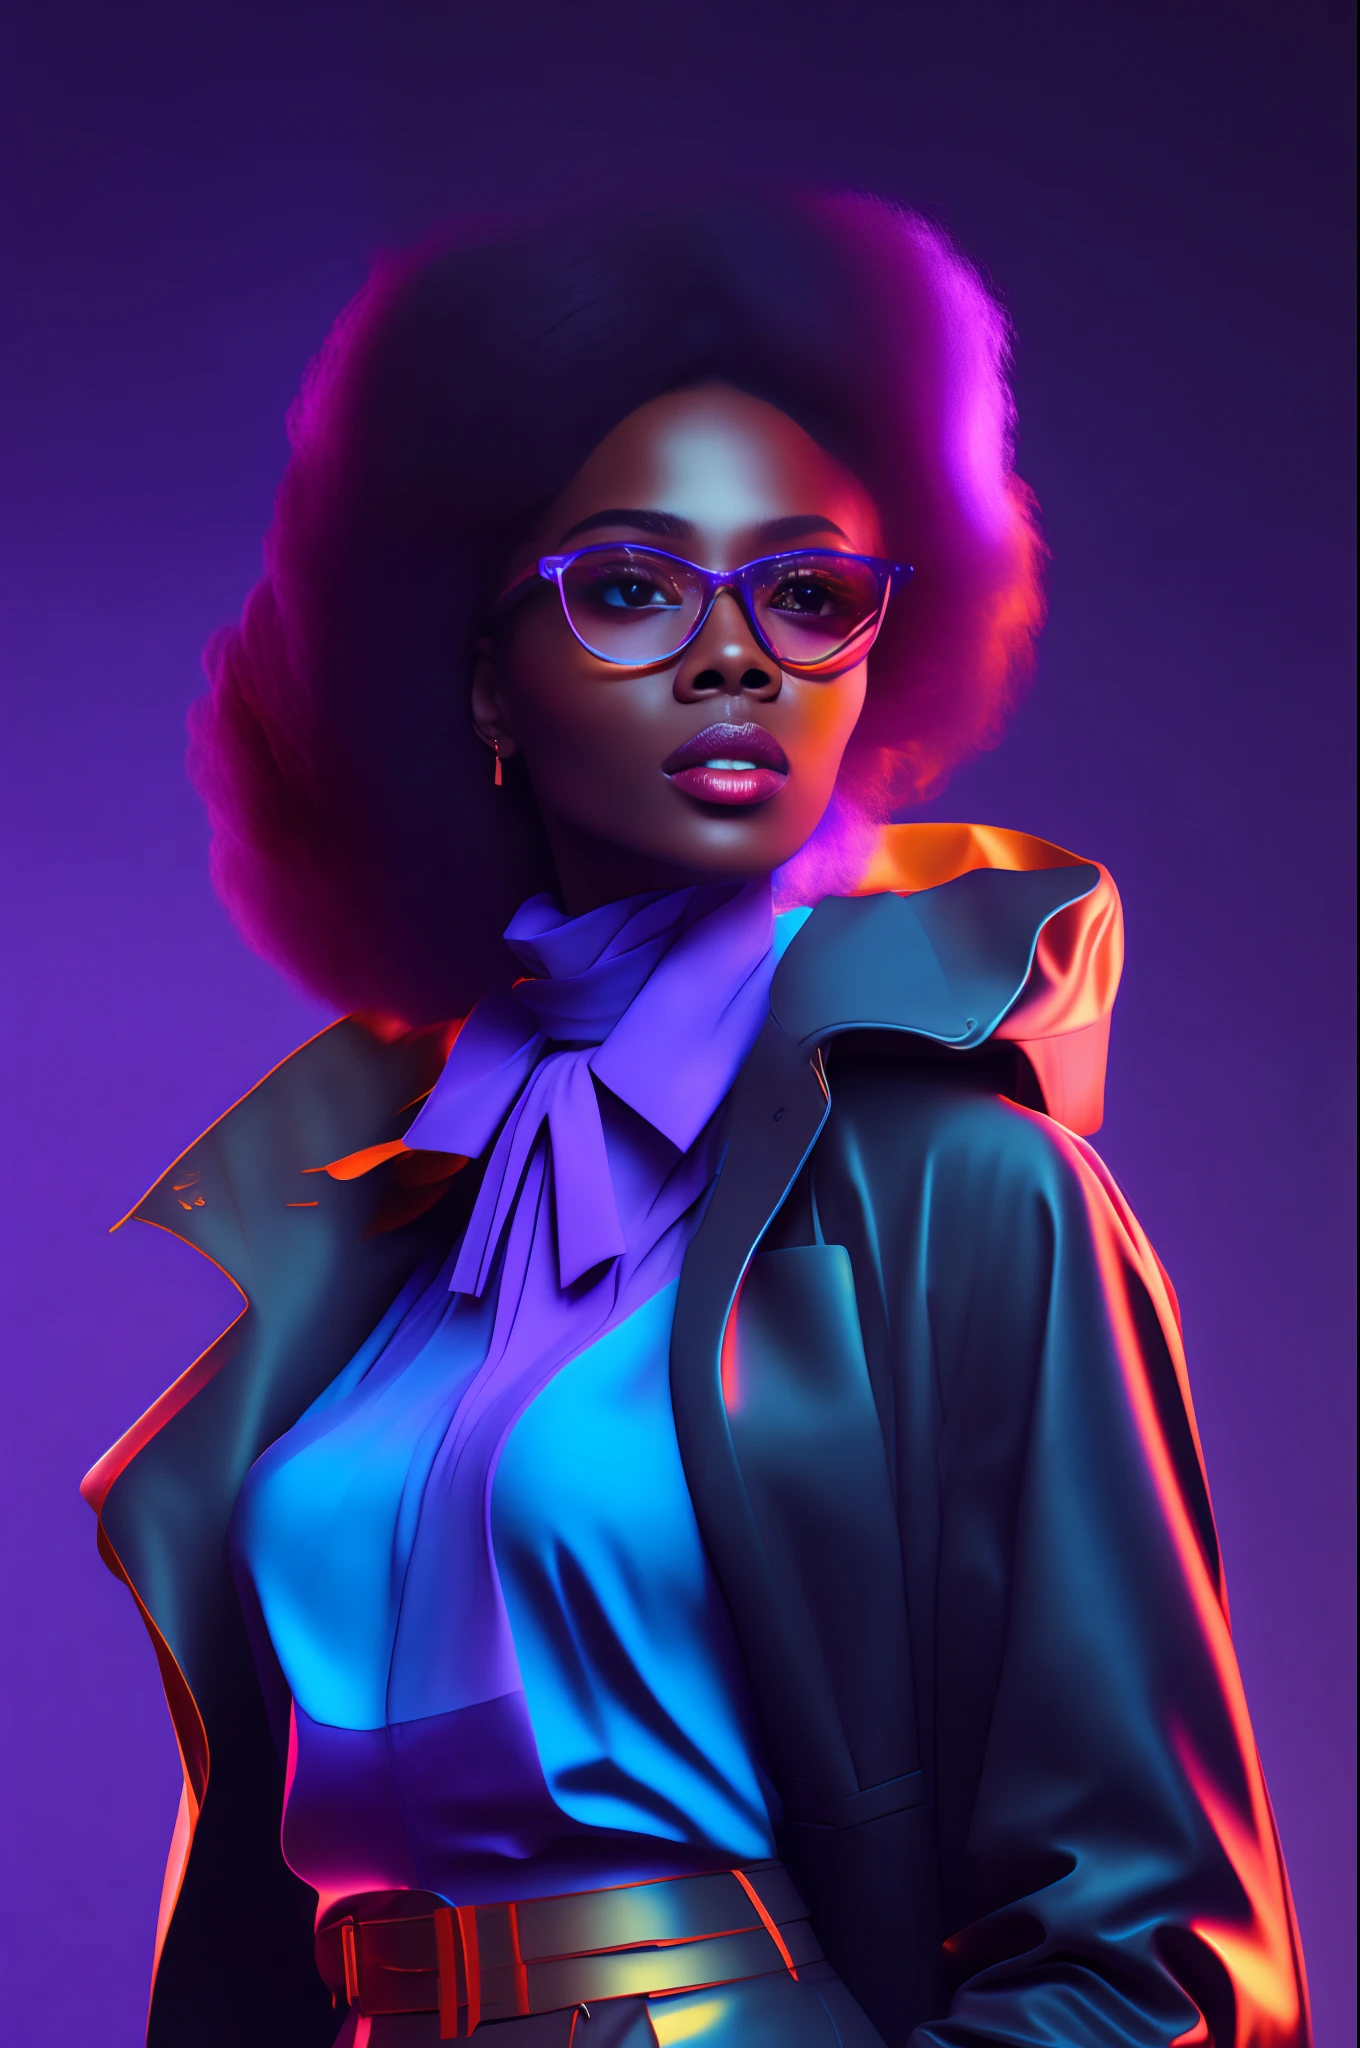 ( Ganzkörper-Fashionista-Bild einer afrikanischen Frau mit einer Brille,Jacke und Krawatte,( Moikano-Haare)  Gut geschnitten, an den Seiten im 90er-Jahre-Stil rasiert, und Ohrringe, hohe Textur, Porträt-Farb-Glamour, detailliertes Porträt, hochwertiges Porträt, Neonfarbenausblutung, farbenfrohes Porträt, Studioporträt , Kerne ultravioleta e neon, Illustration,  scheinen, gottverdammt, leihen, 8k, Octan-Render, Kino 4D, Mixer, Globale Beleuchtung im Gesicht, Ultradetaillierte, atmosphärische 8K, filmisch sinnlich, scharfer Fokus, humorous Illustration, große Schärfentiefe, erstes Werk, Kerne, 3d octane render, 4k, Konzeptkunst,  Trends bei Artstation, Hyperrealistisch, Kerne pastel, Leuchtring, Extrem detailliertes CG Unity 8k-Hintergrundbild, Trends bei Artstation, Trend in der CG-Gesellschaft, Pop-Art-Stil von Tom Nulens, kompliziert, hohe Detailgenauigkeit, Beleuchtung dramatisch, Hochdetaillierte Neonhintergründe, dramatisch , Pure Energie, Lichtteilchen, Science-Fiction